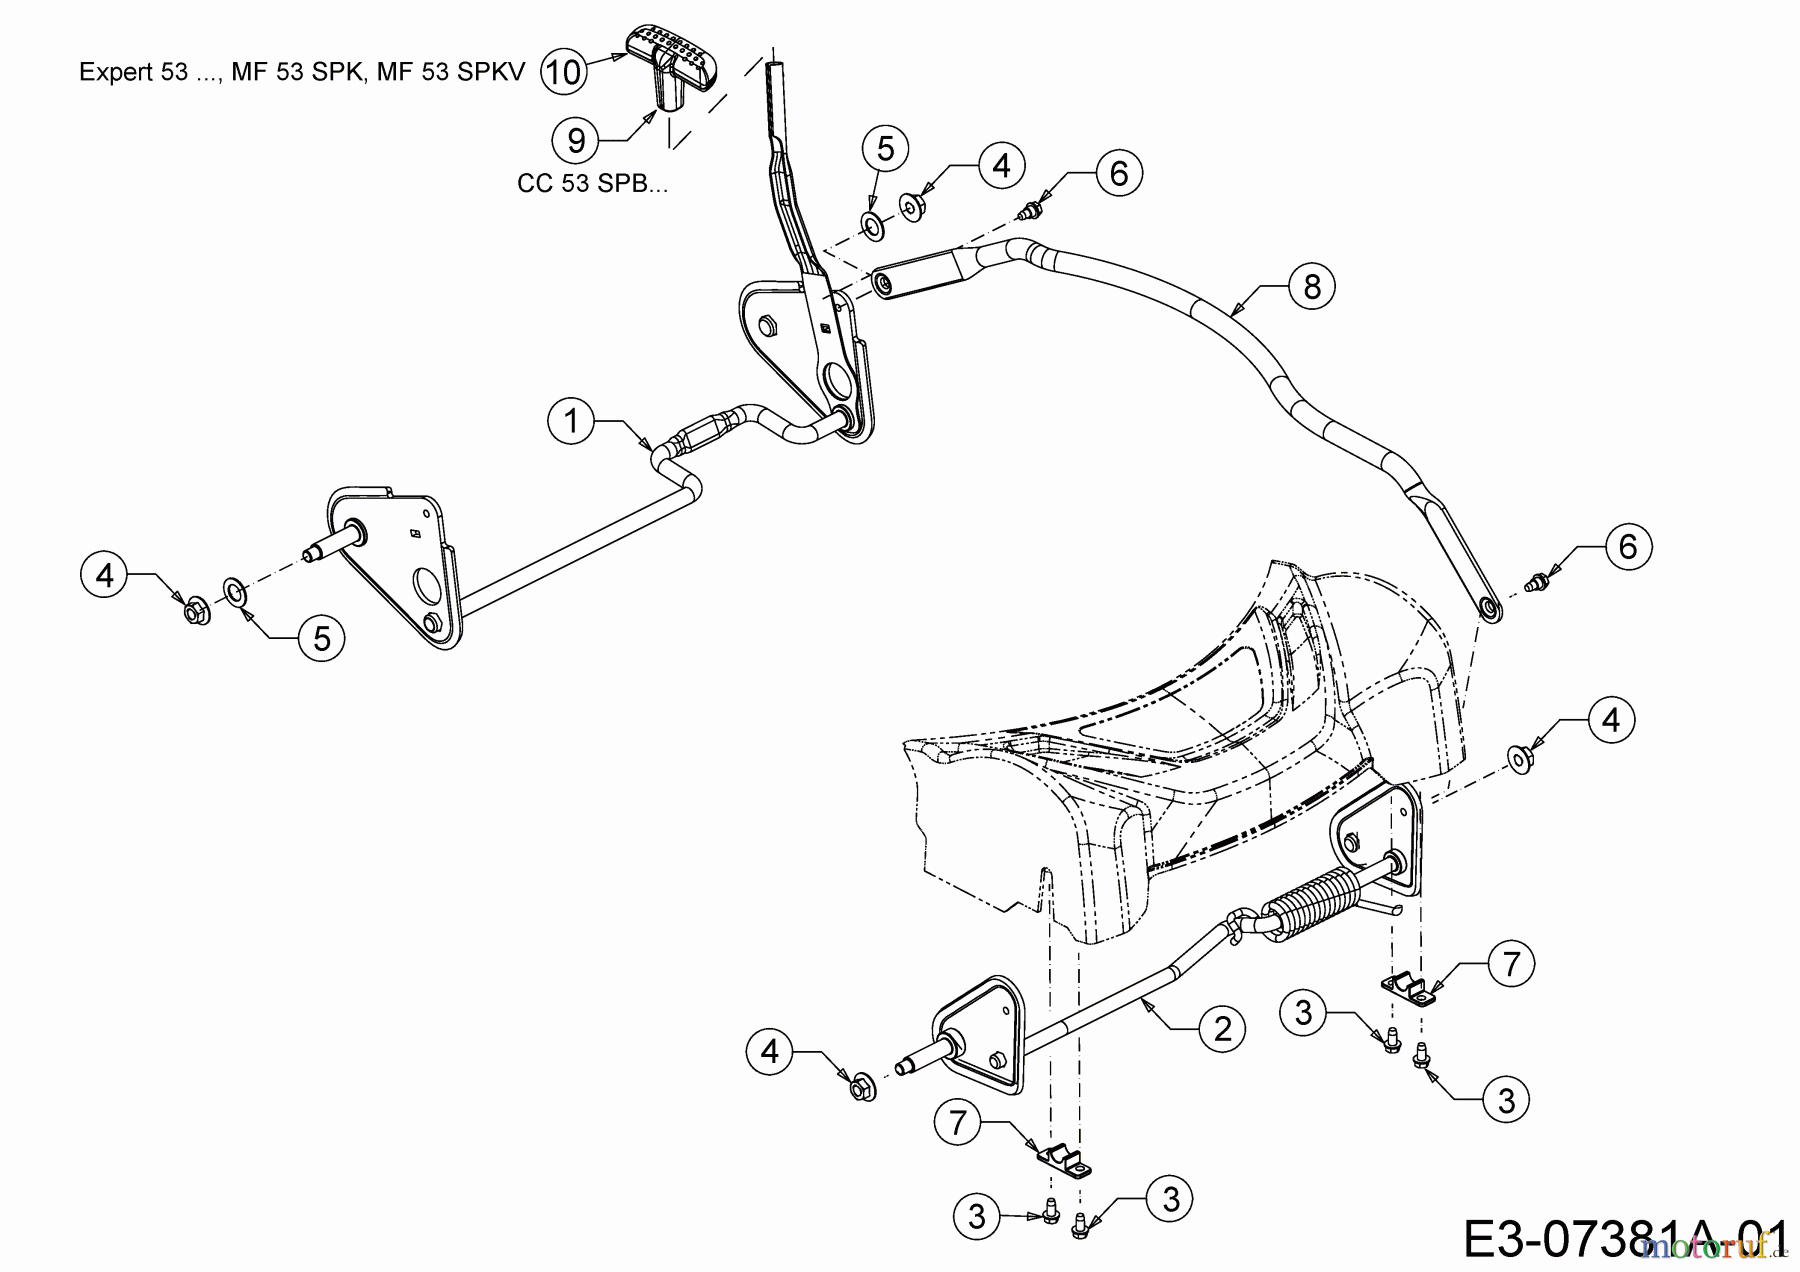  WOLF-Garten Expert Petrol mower self propelled Expert 53 BA 12B-Q56K650  (2014) Axles, Height adjustment